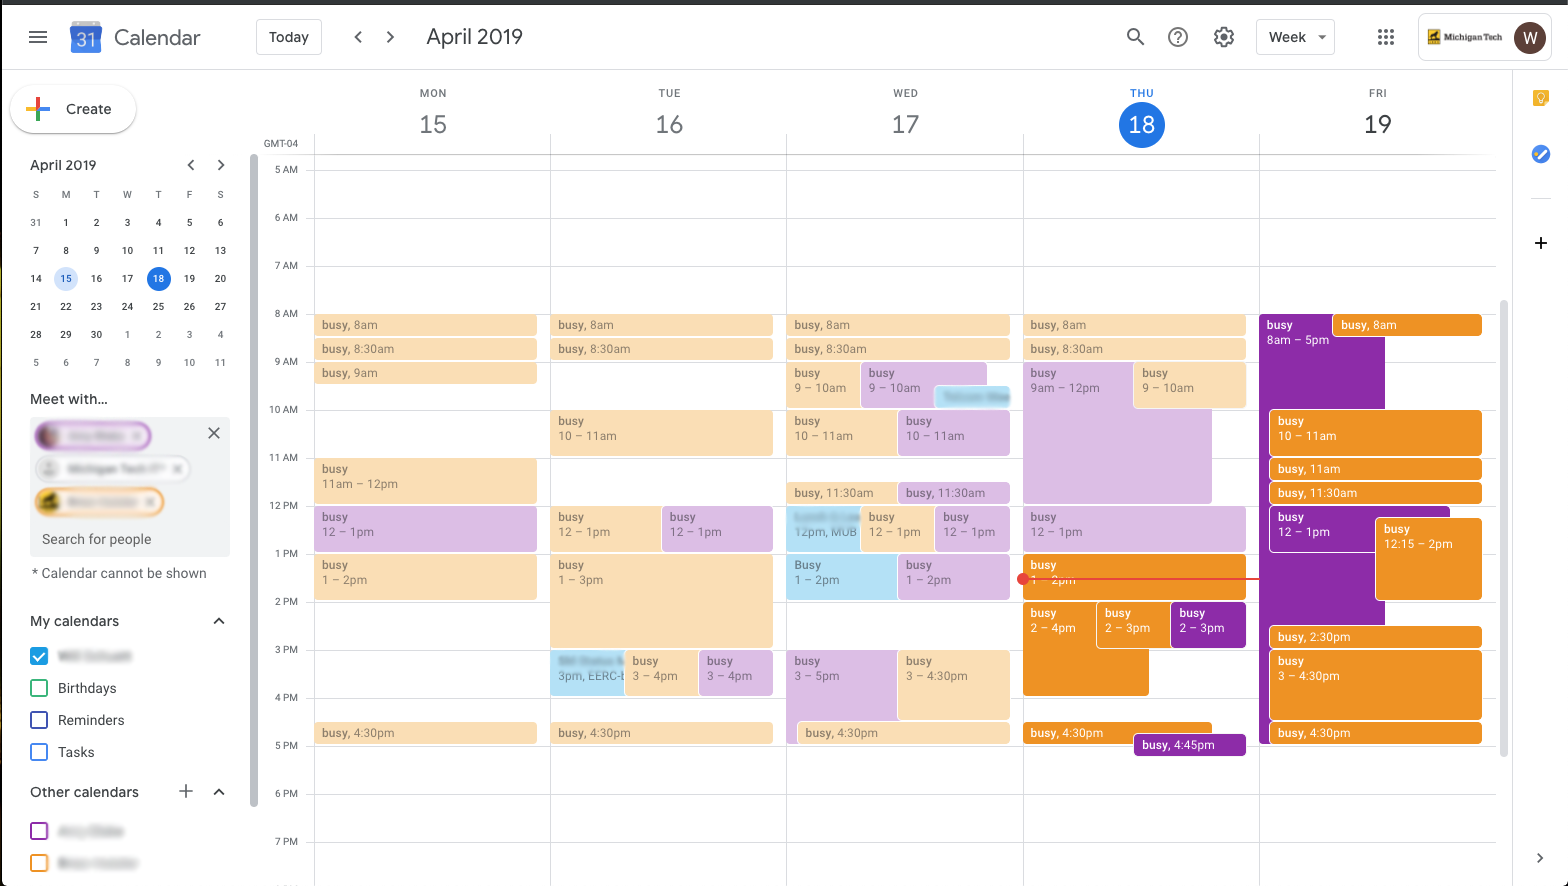 New Google Calendar feature | Michigan Tech IT Blog